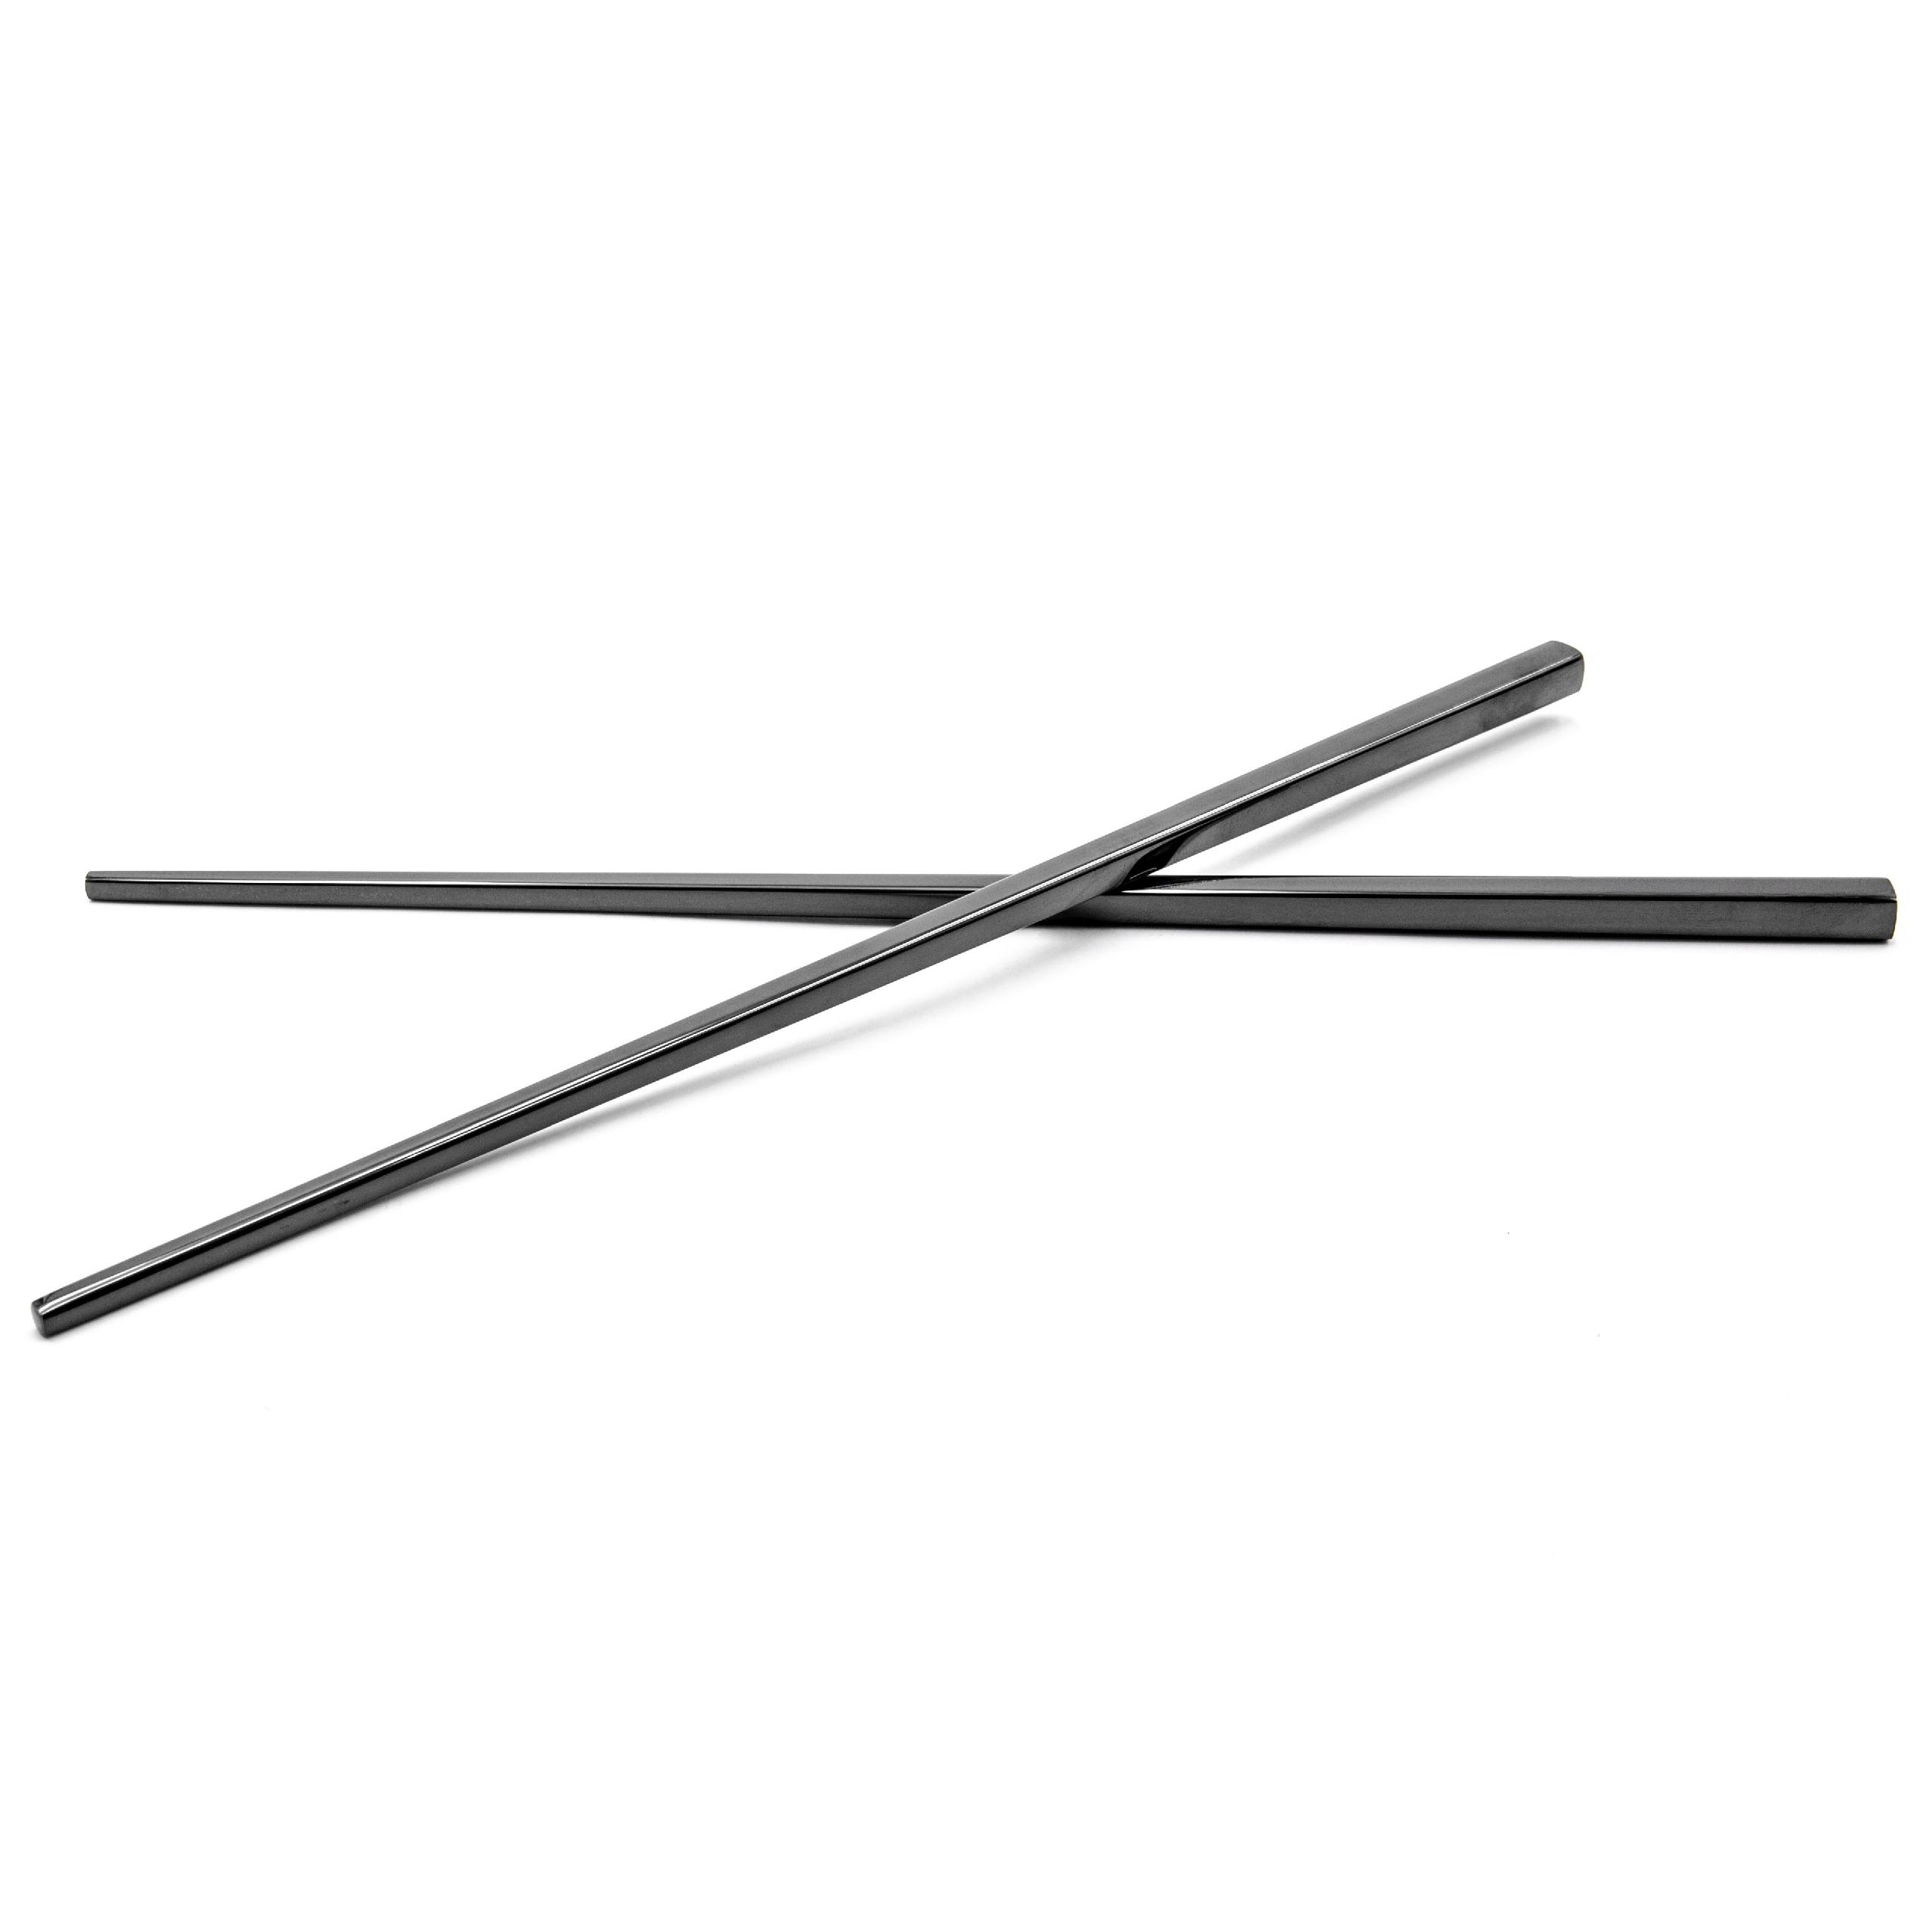 Essstäbchen-Set (1 Paar) - Edelstahl, schwarz, 23 cm lang, Wiederwendbar